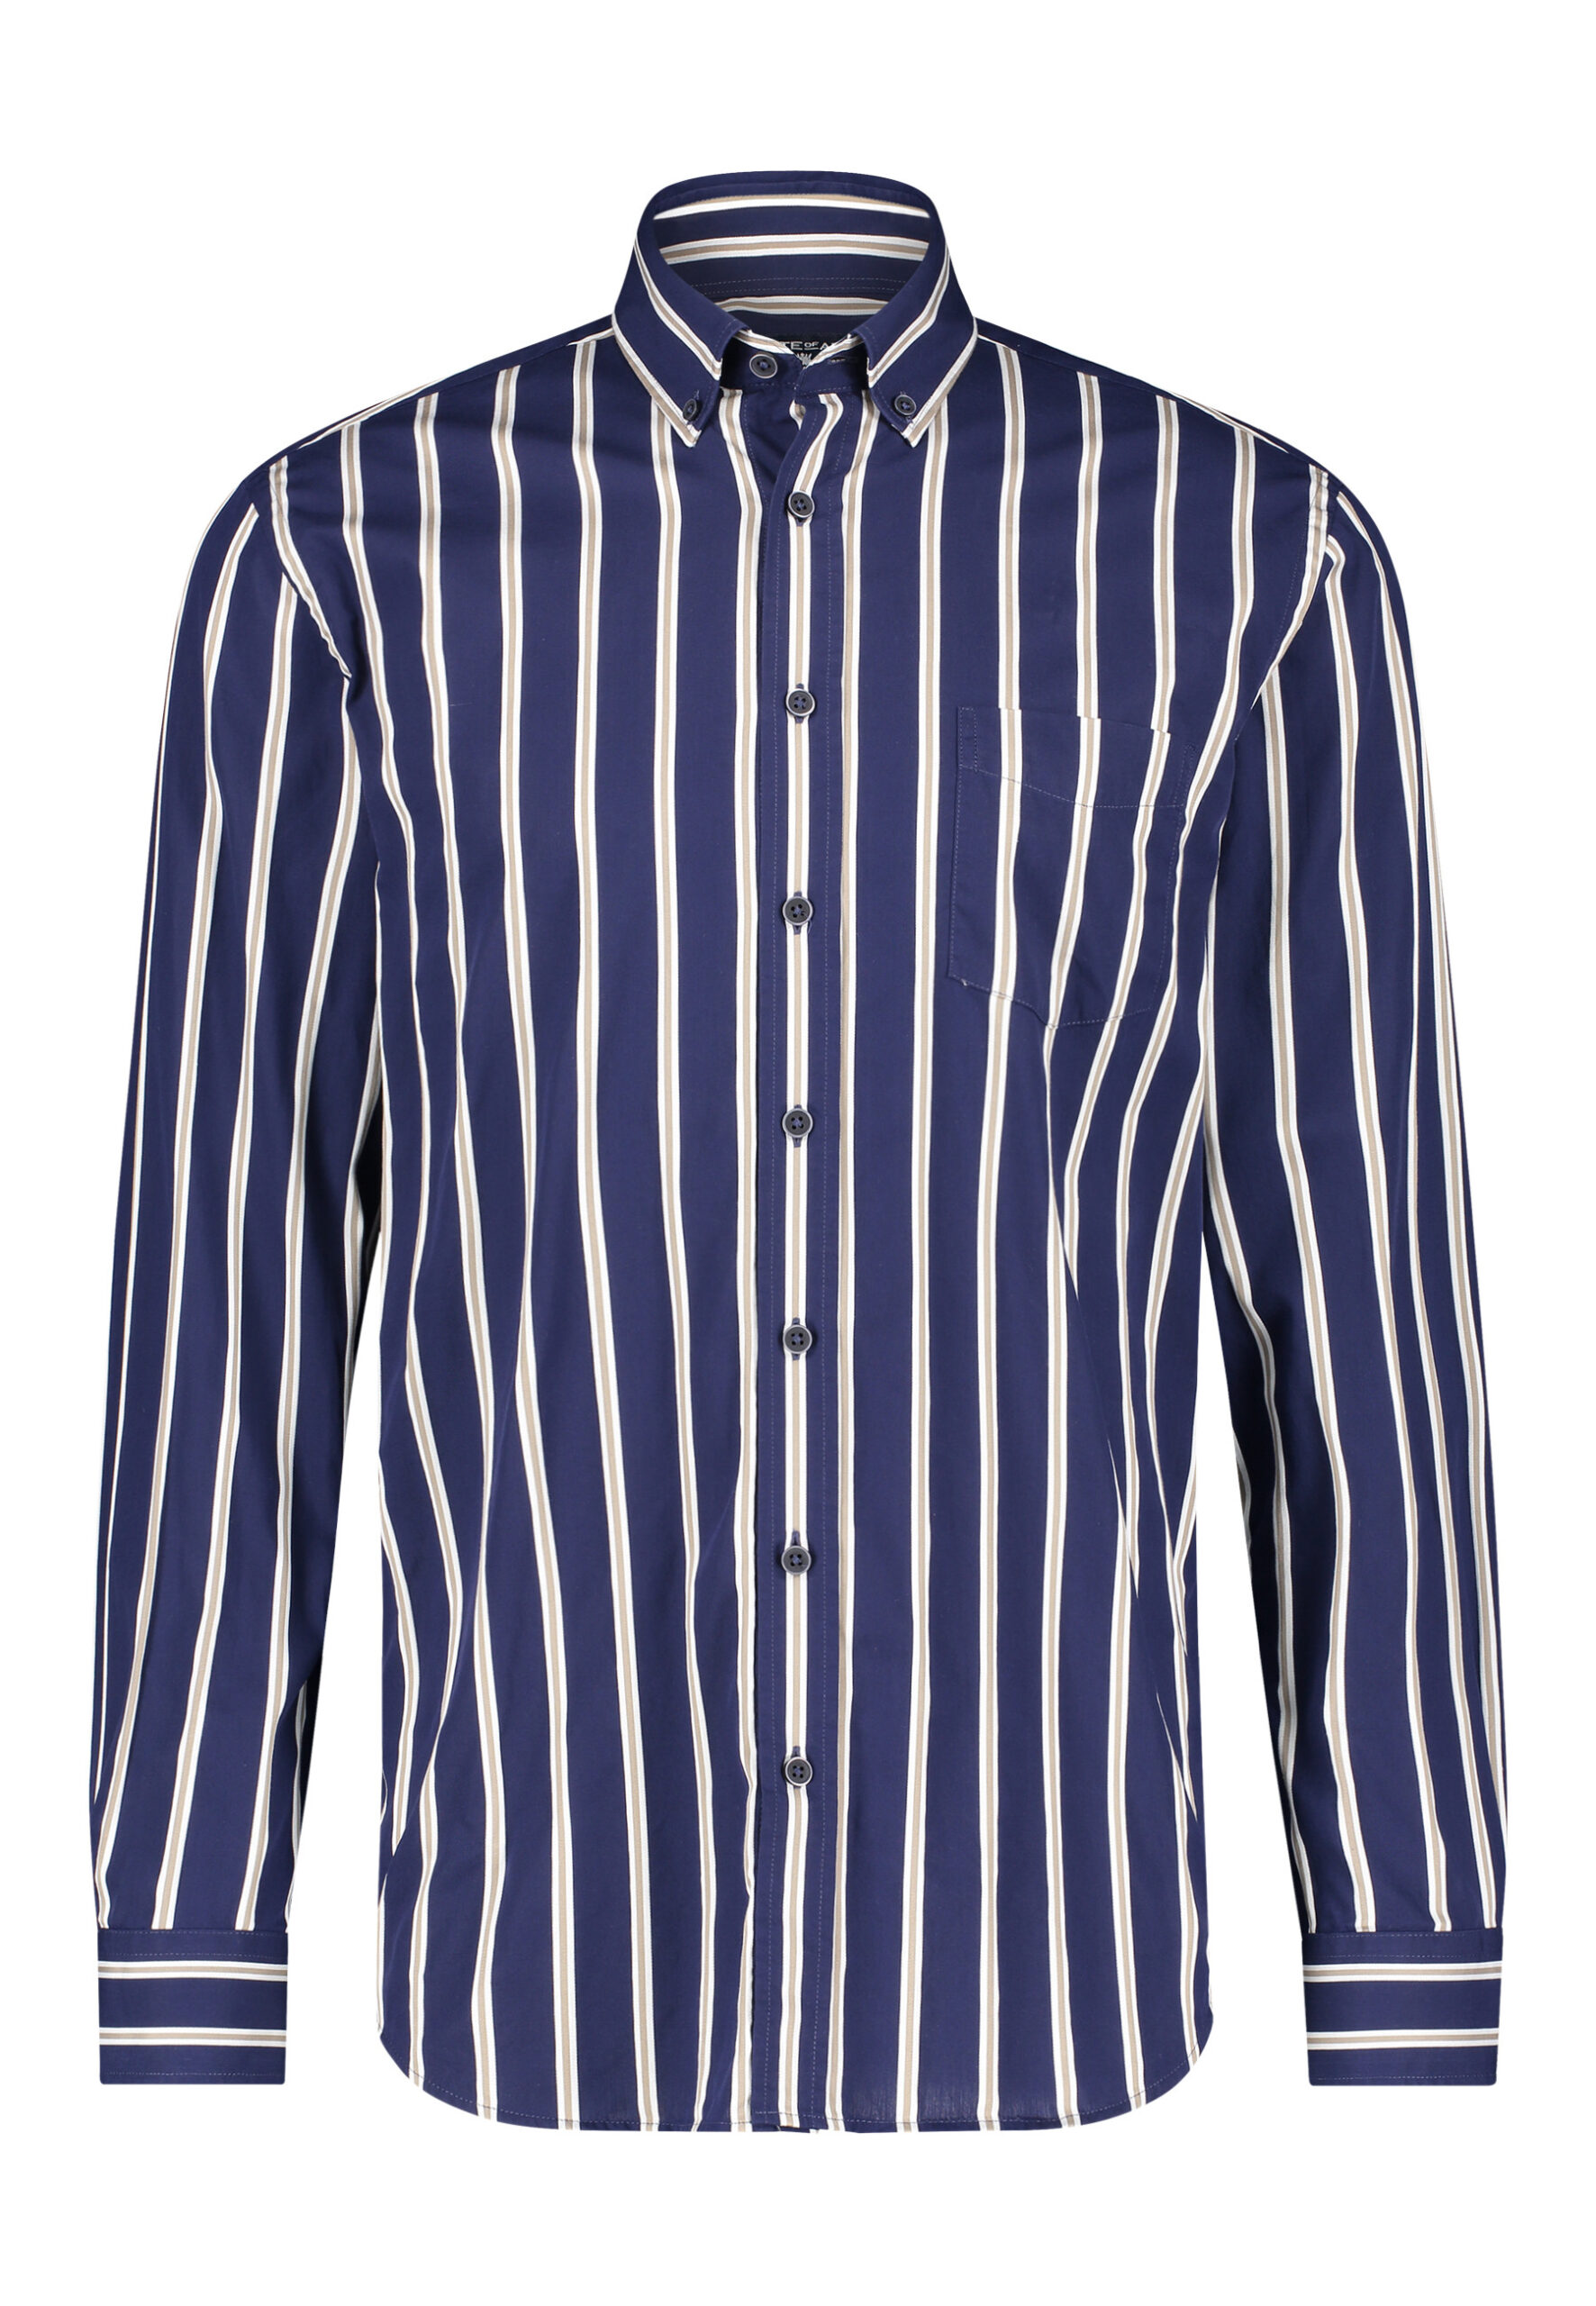 of Art Katoenen overhemd streepdessin donkerblauw/wit grijs - J Style